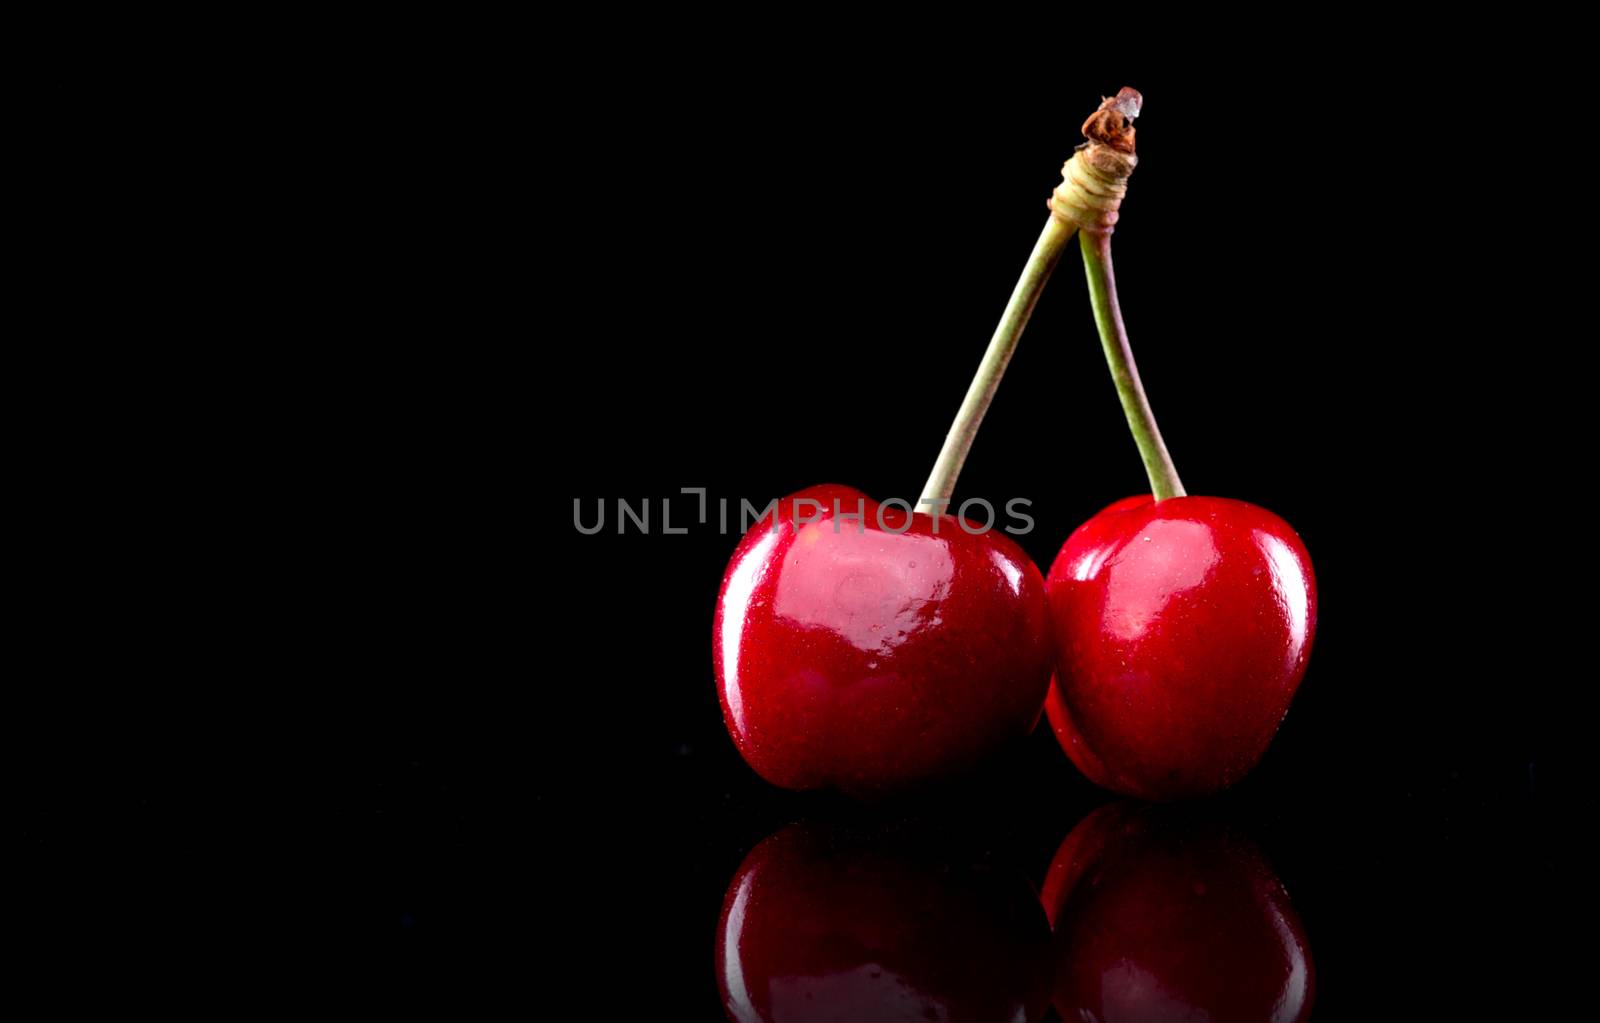 Ripe juicy cherries standing on black background.